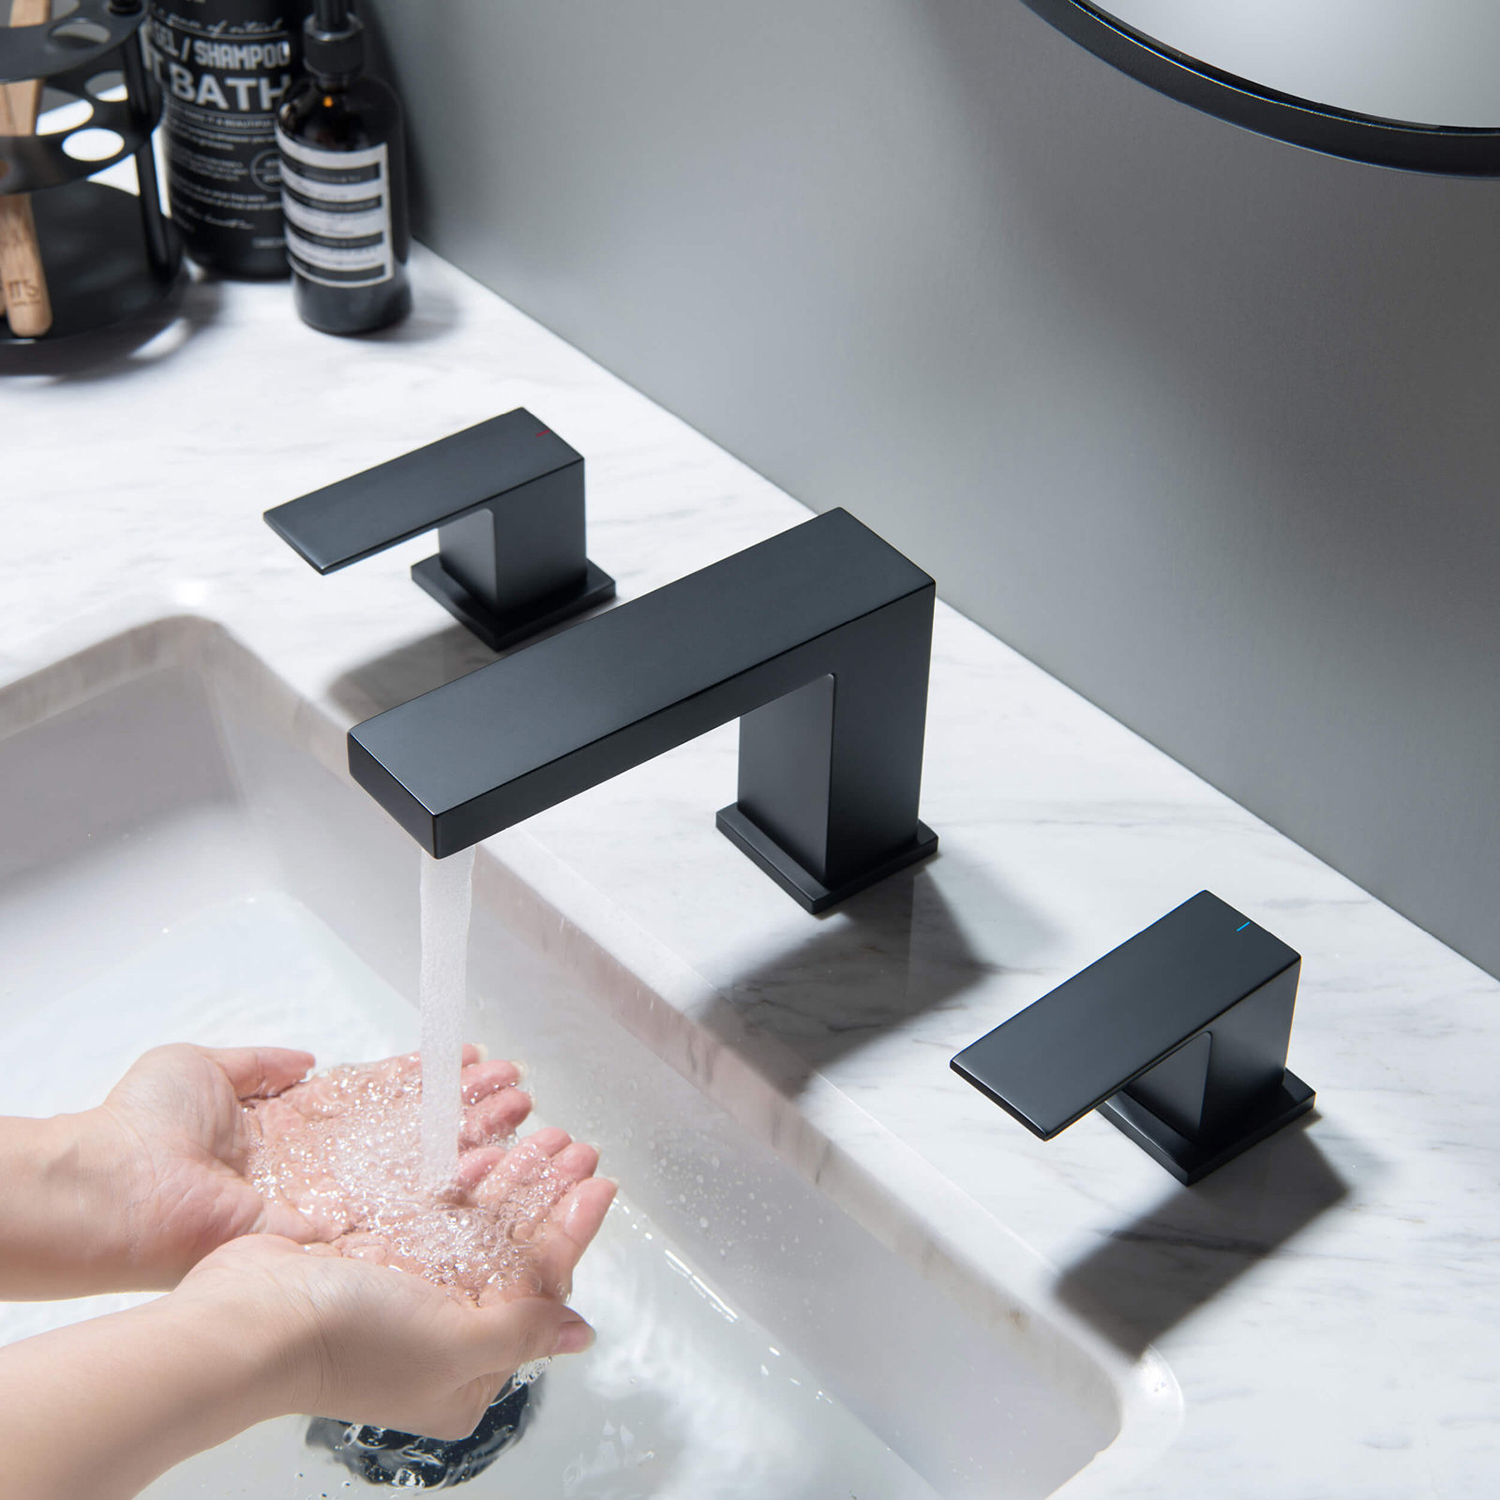 CUPC Kraanfabriek Luxe zwart messing wijdverspreide badkamerkraan 8 inch met dubbele handgrepen voor badkamergootsteen